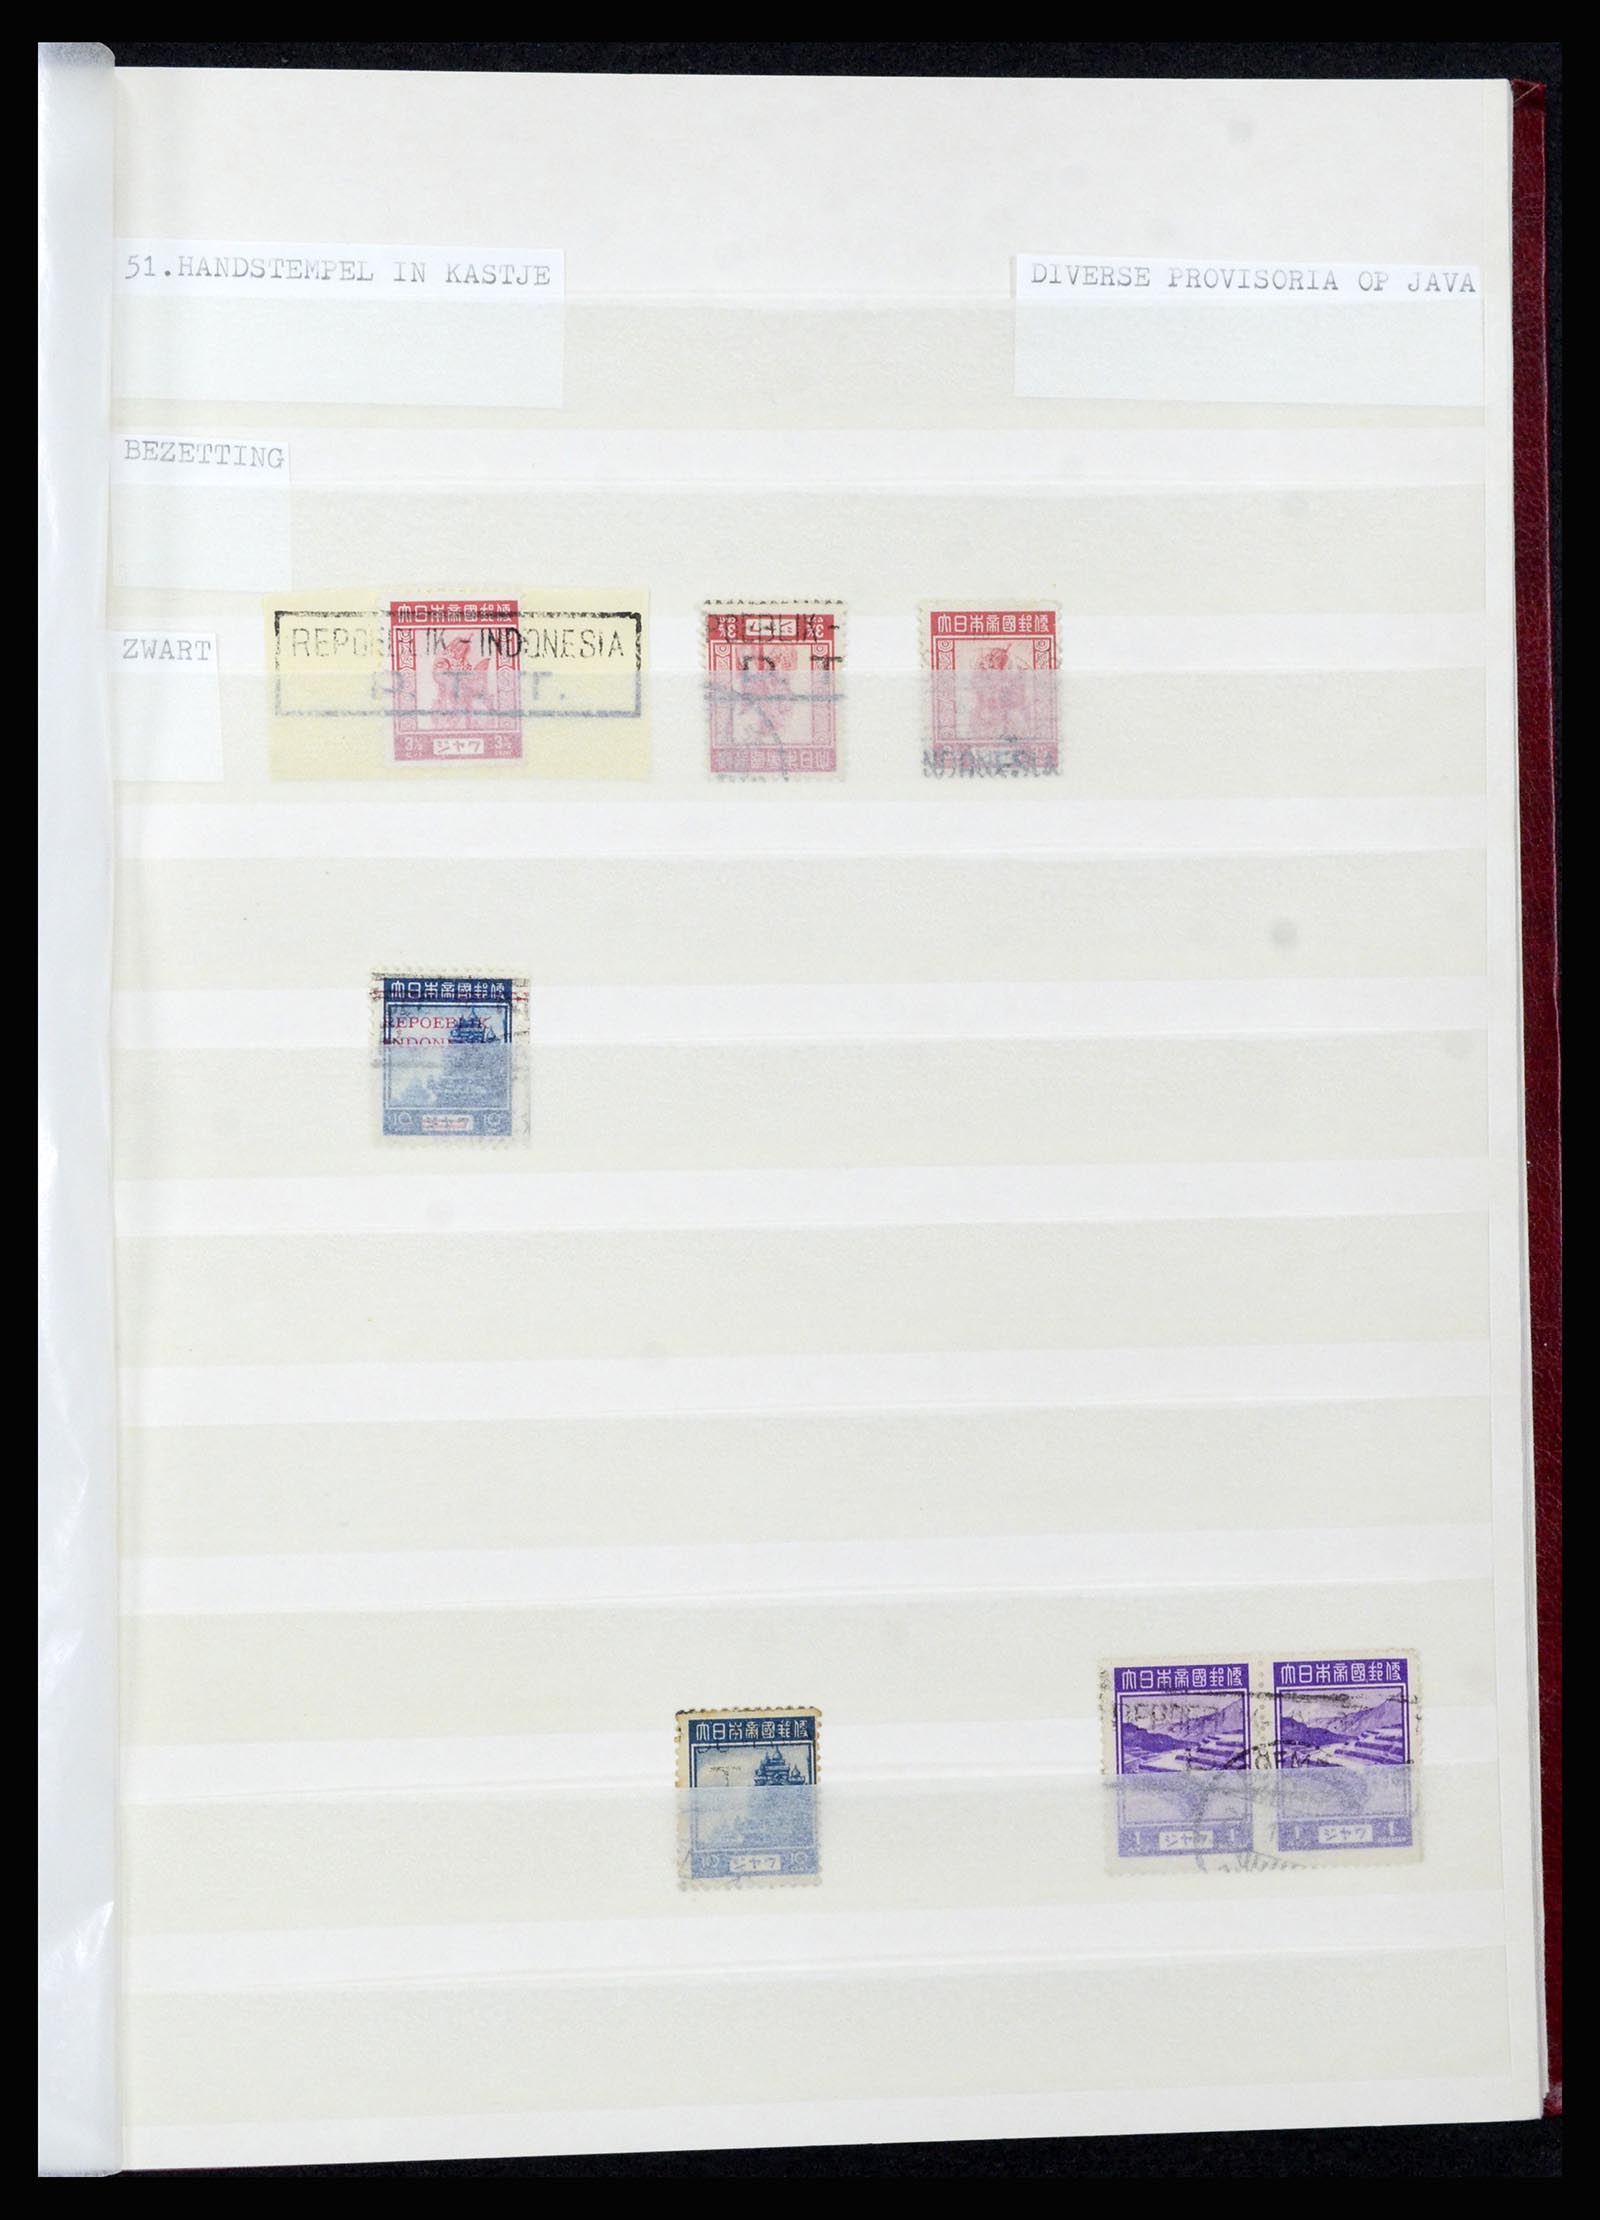 36742 046 - Stamp collection 36742 Dutch Indies interim period 1945-1949.